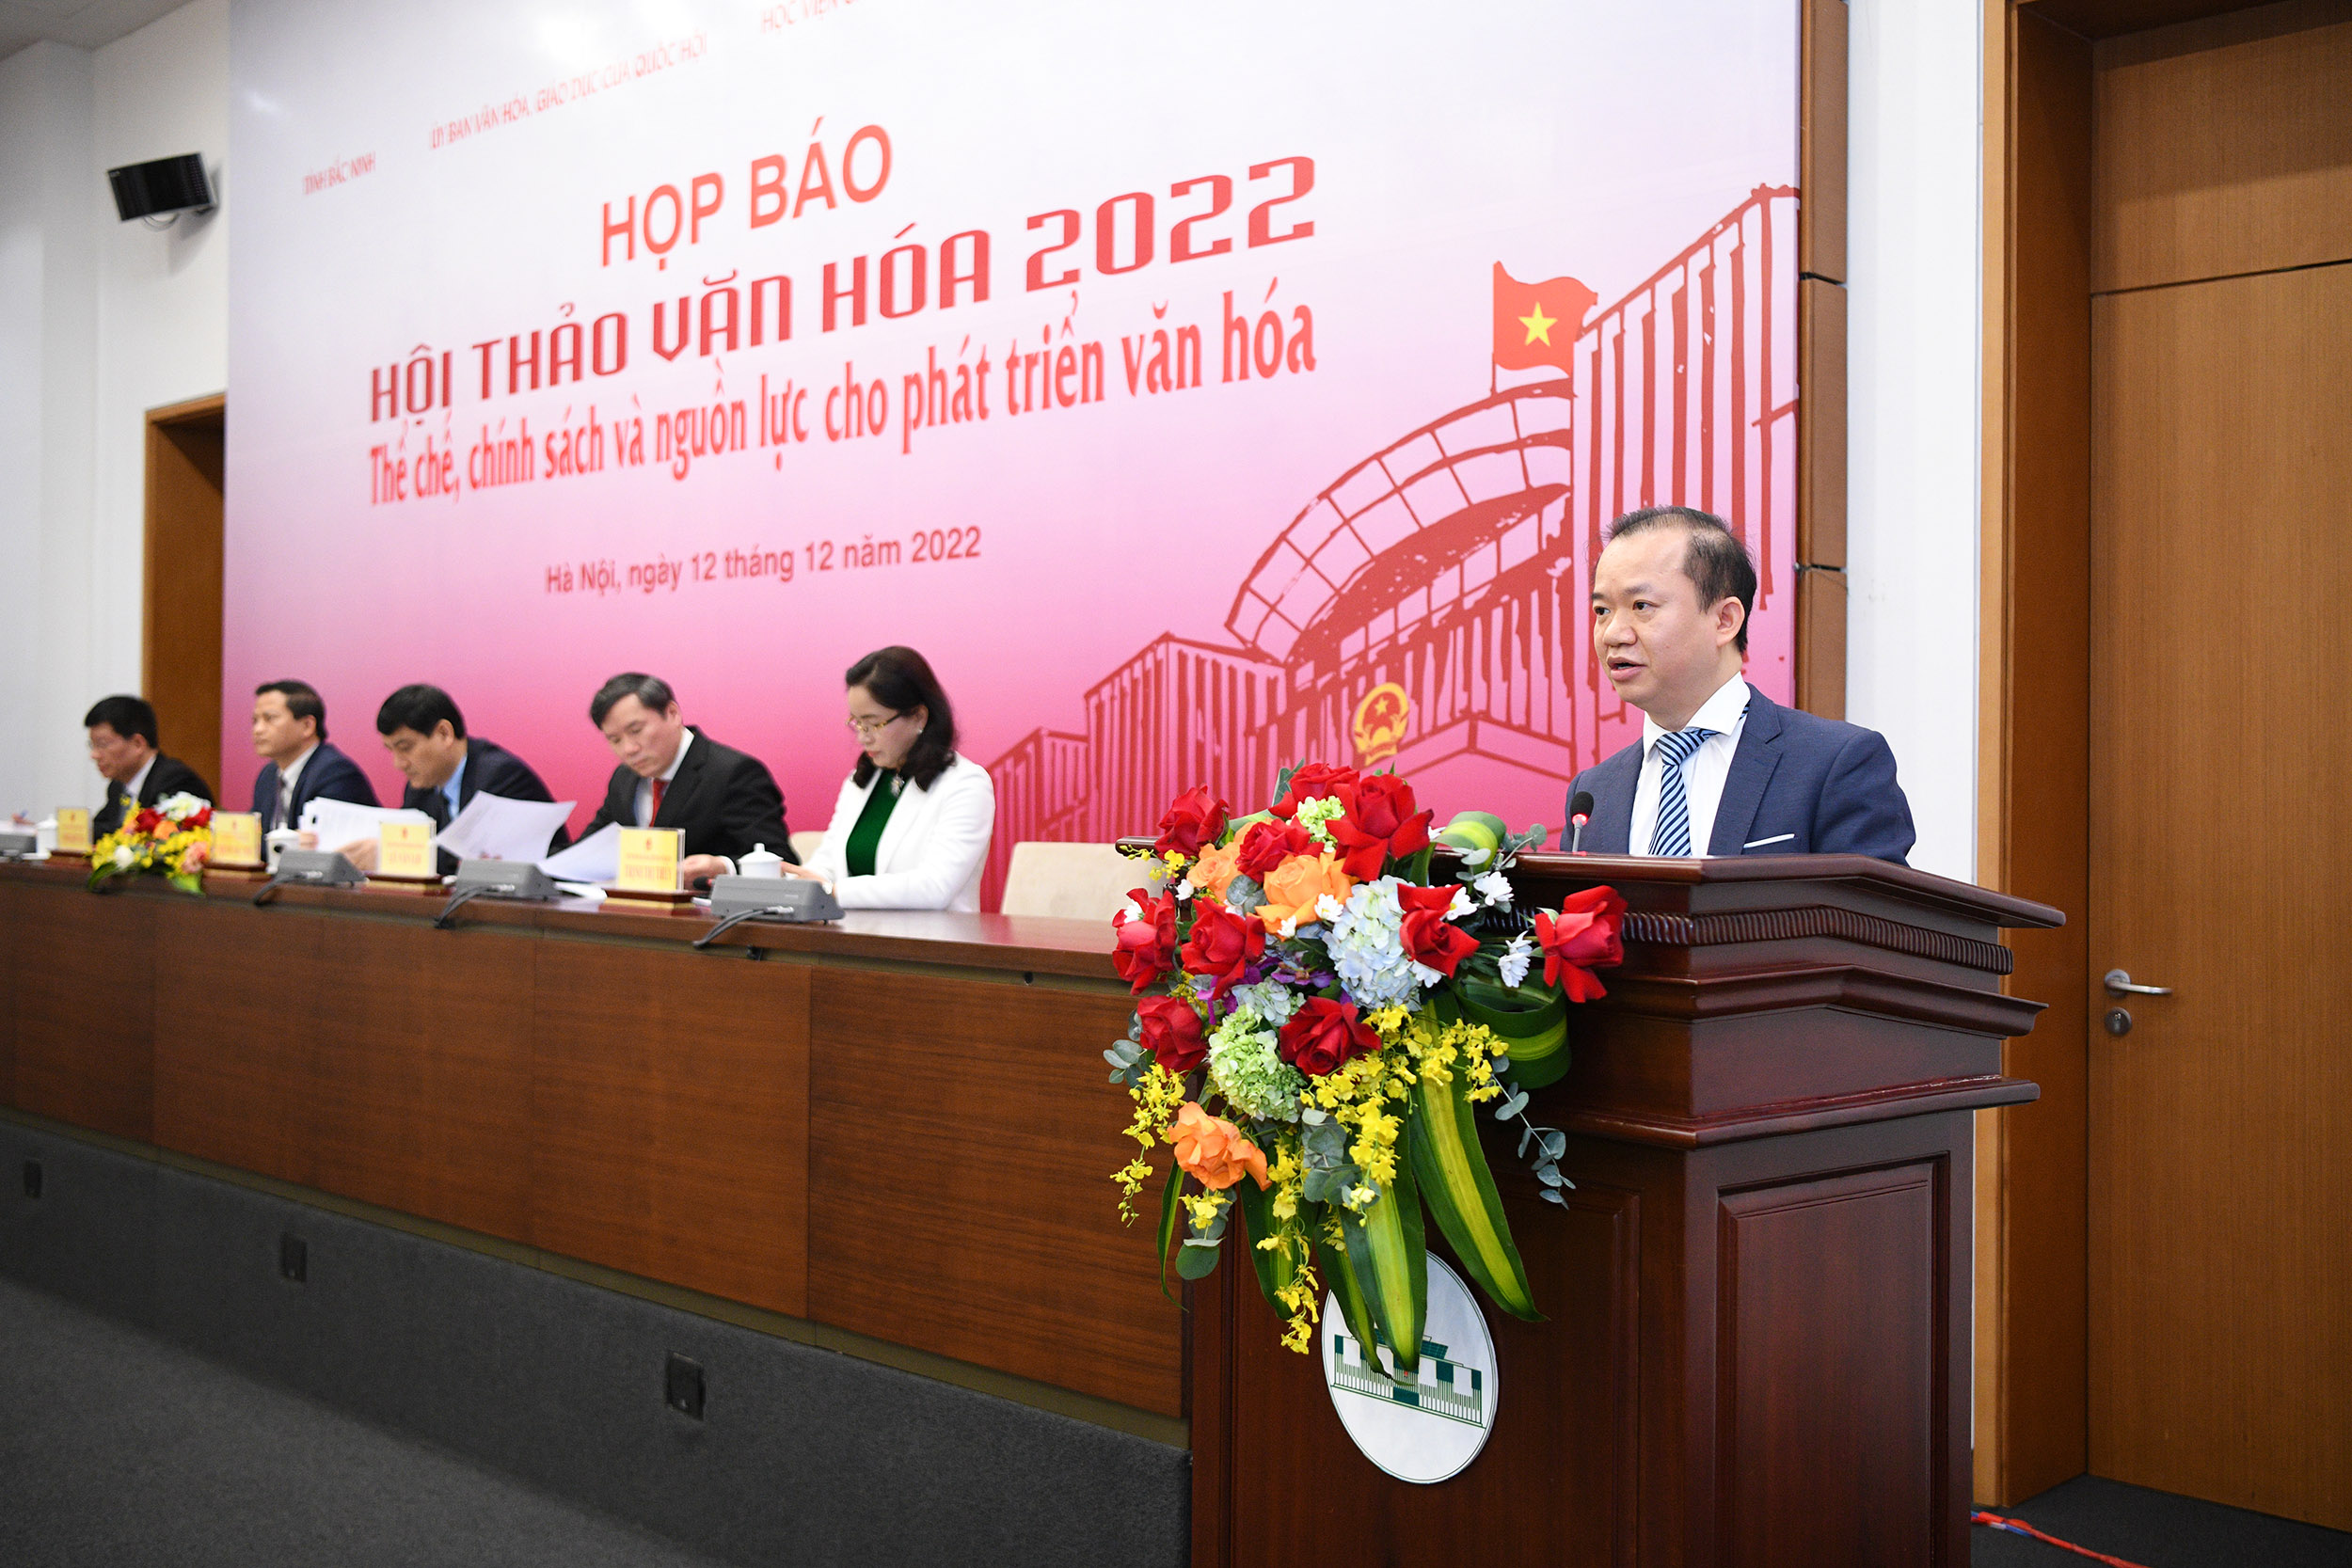 Hội thảo Văn hóa 2022: Diễn đàn lớn nhằm tháo gỡ "điểm nghẽn" trong lĩnh vực văn hóa - 3